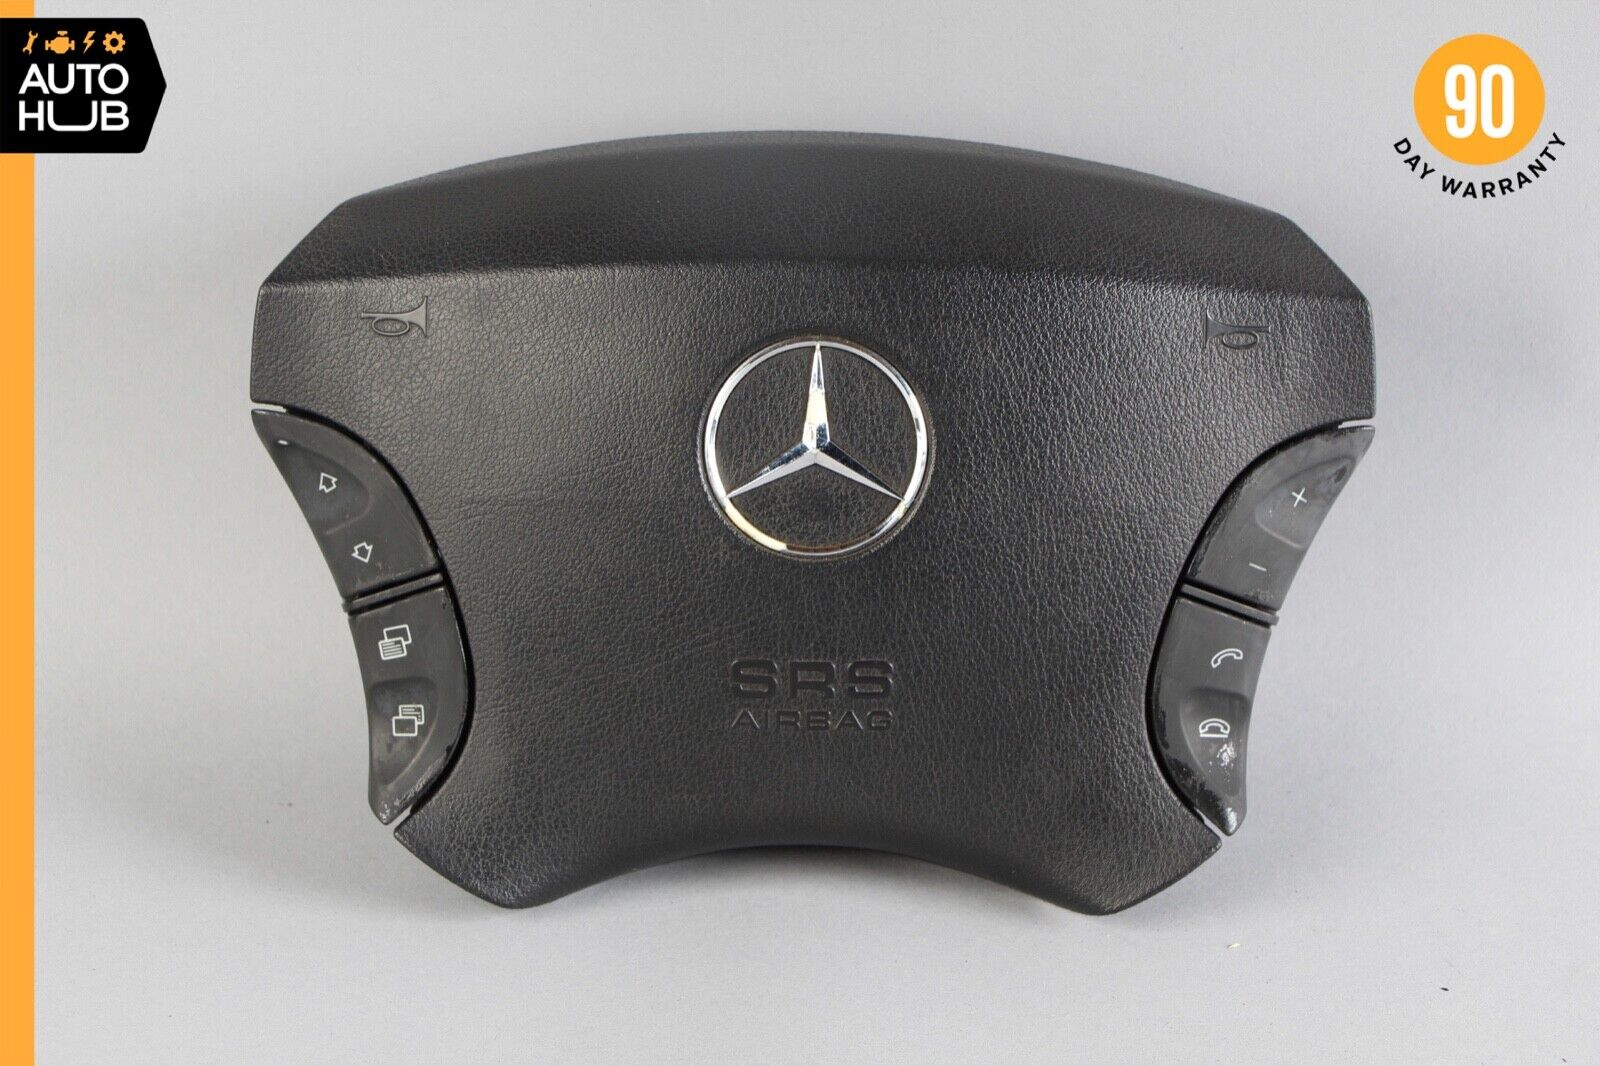 03-06 Mercedes W215 CL55 AMG S430 CL500 Steering Wheel Air Bag Airbag Black OEM